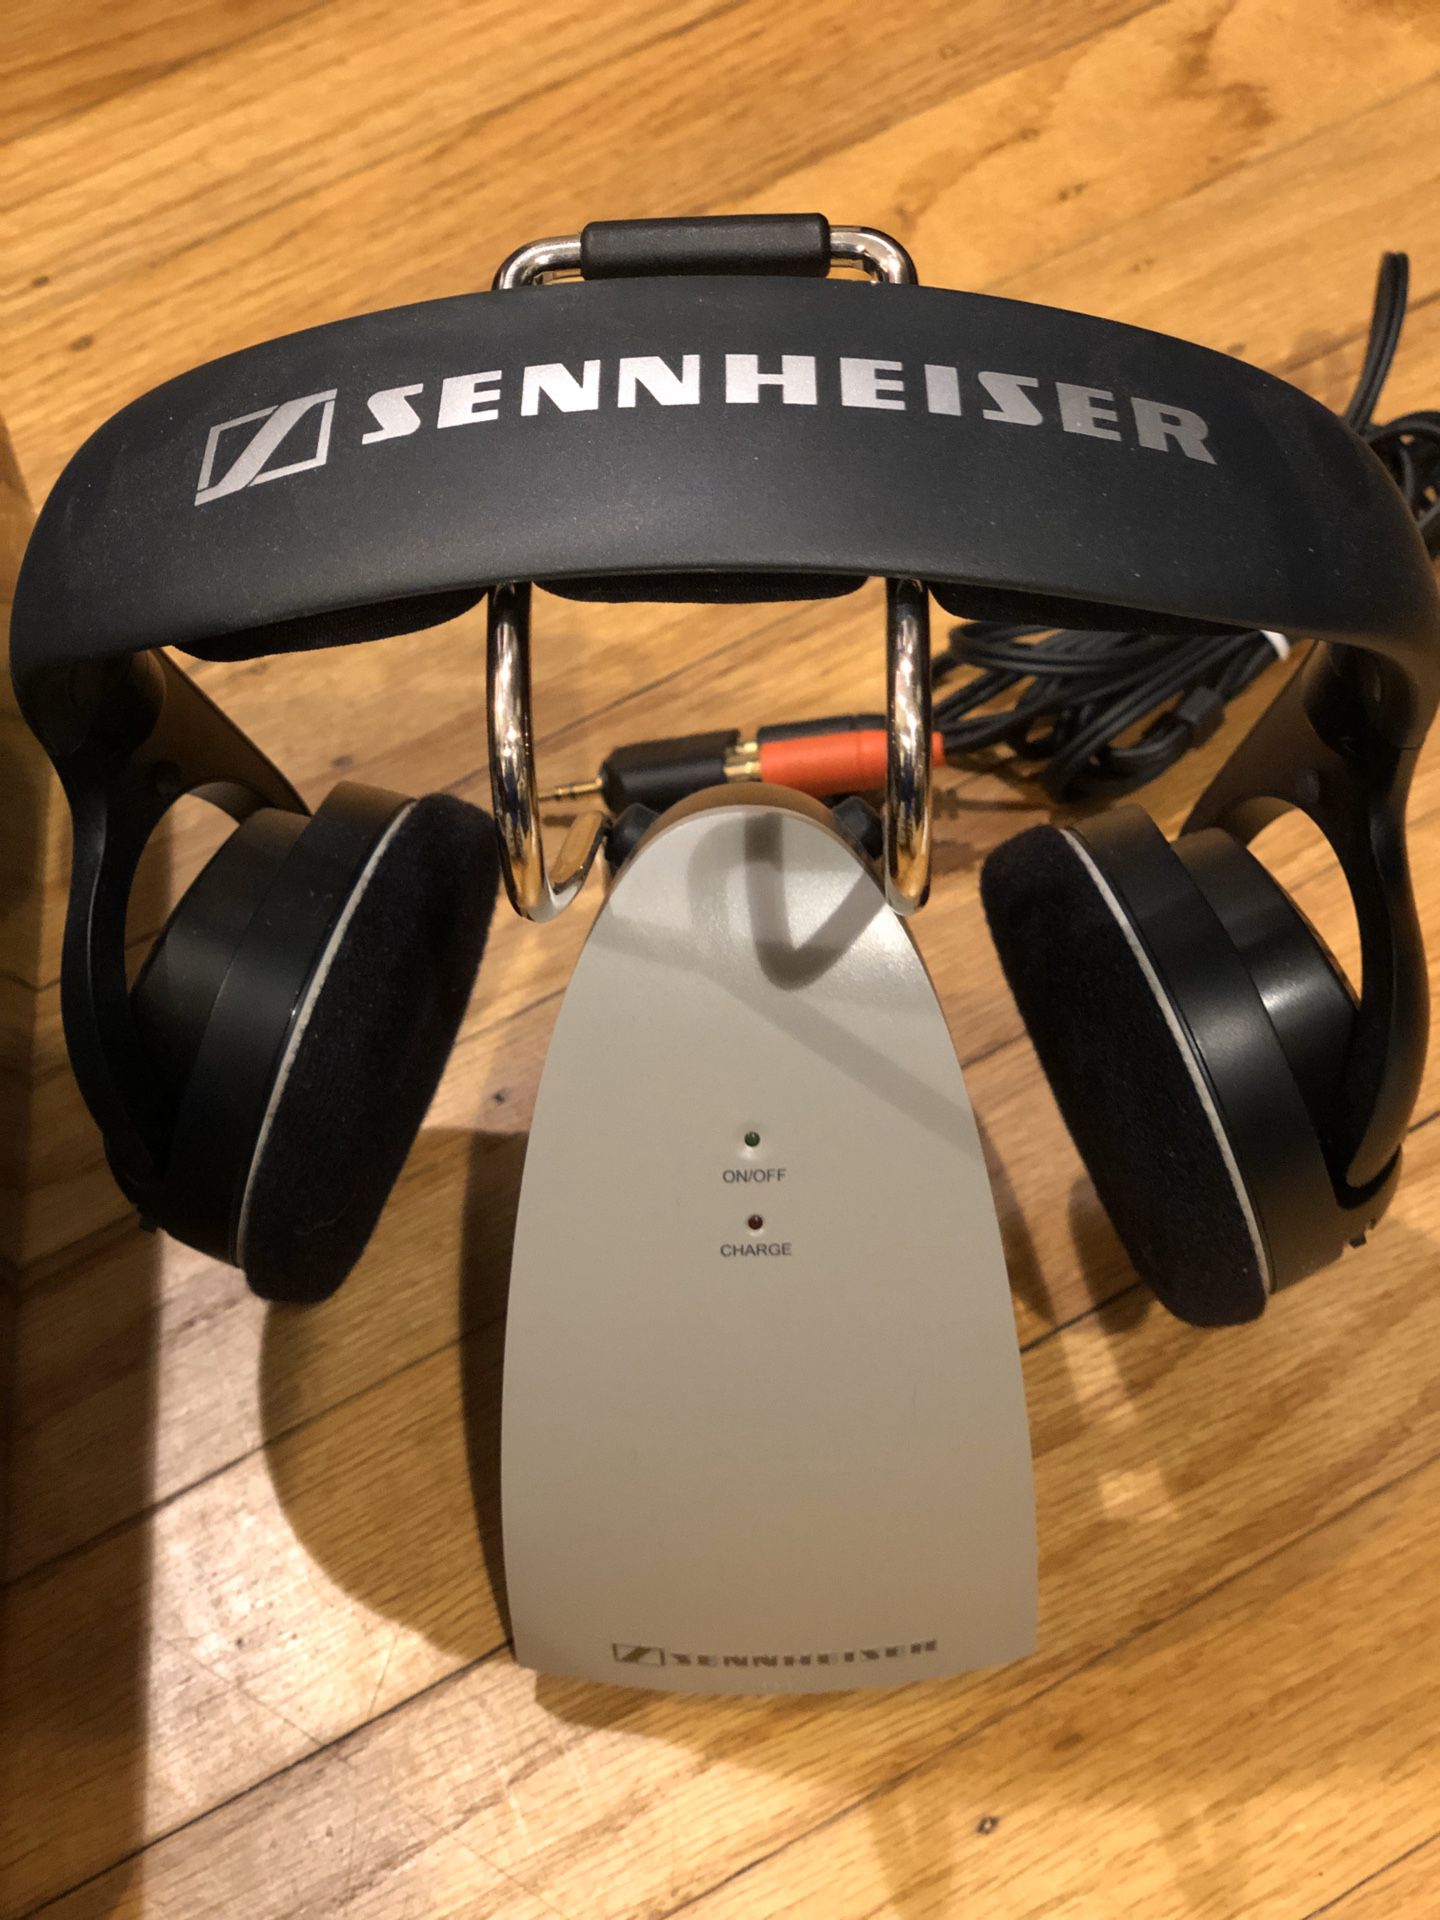 Sennheiser HDR120 Supplemental HiFi Wireless Headphone for RS-120 System